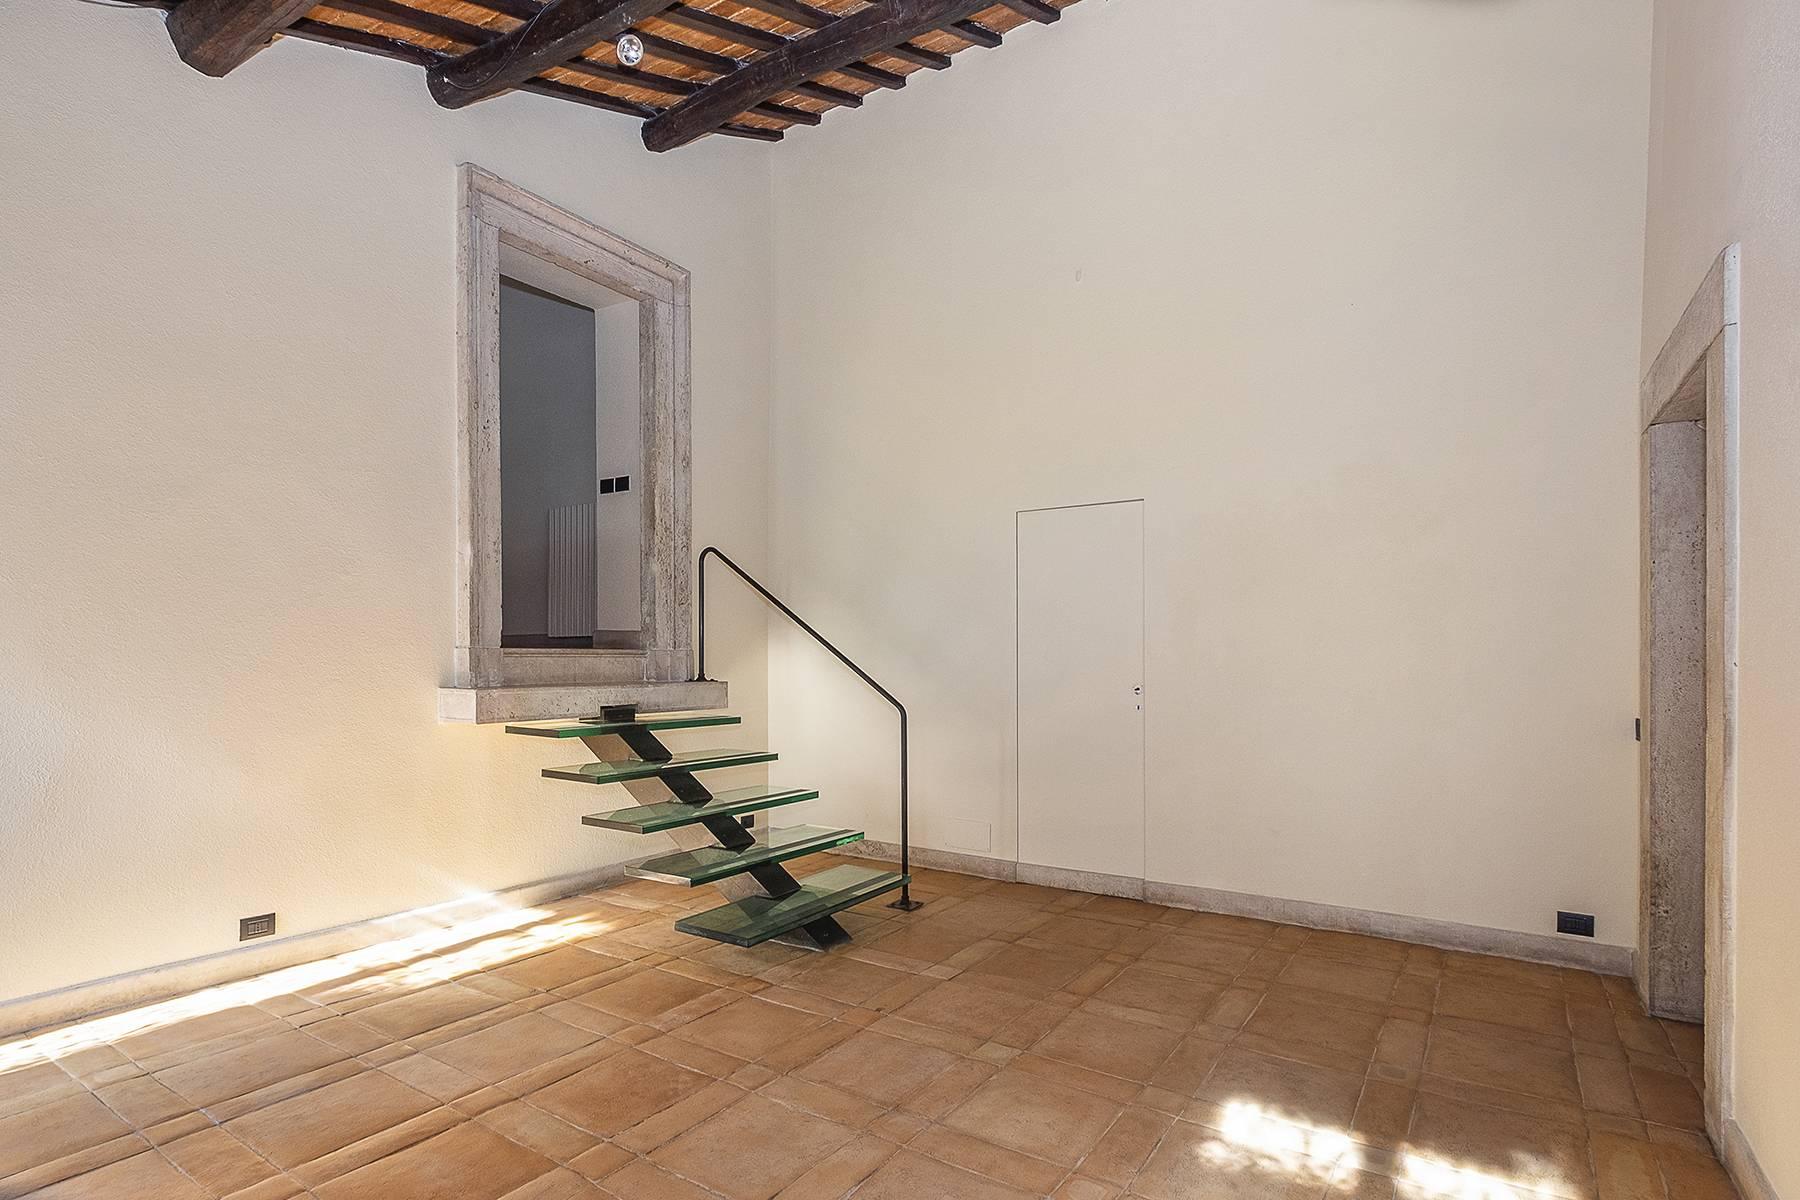 Esclusivo appartamento in centro storico con vista sui tetti di Roma - 16